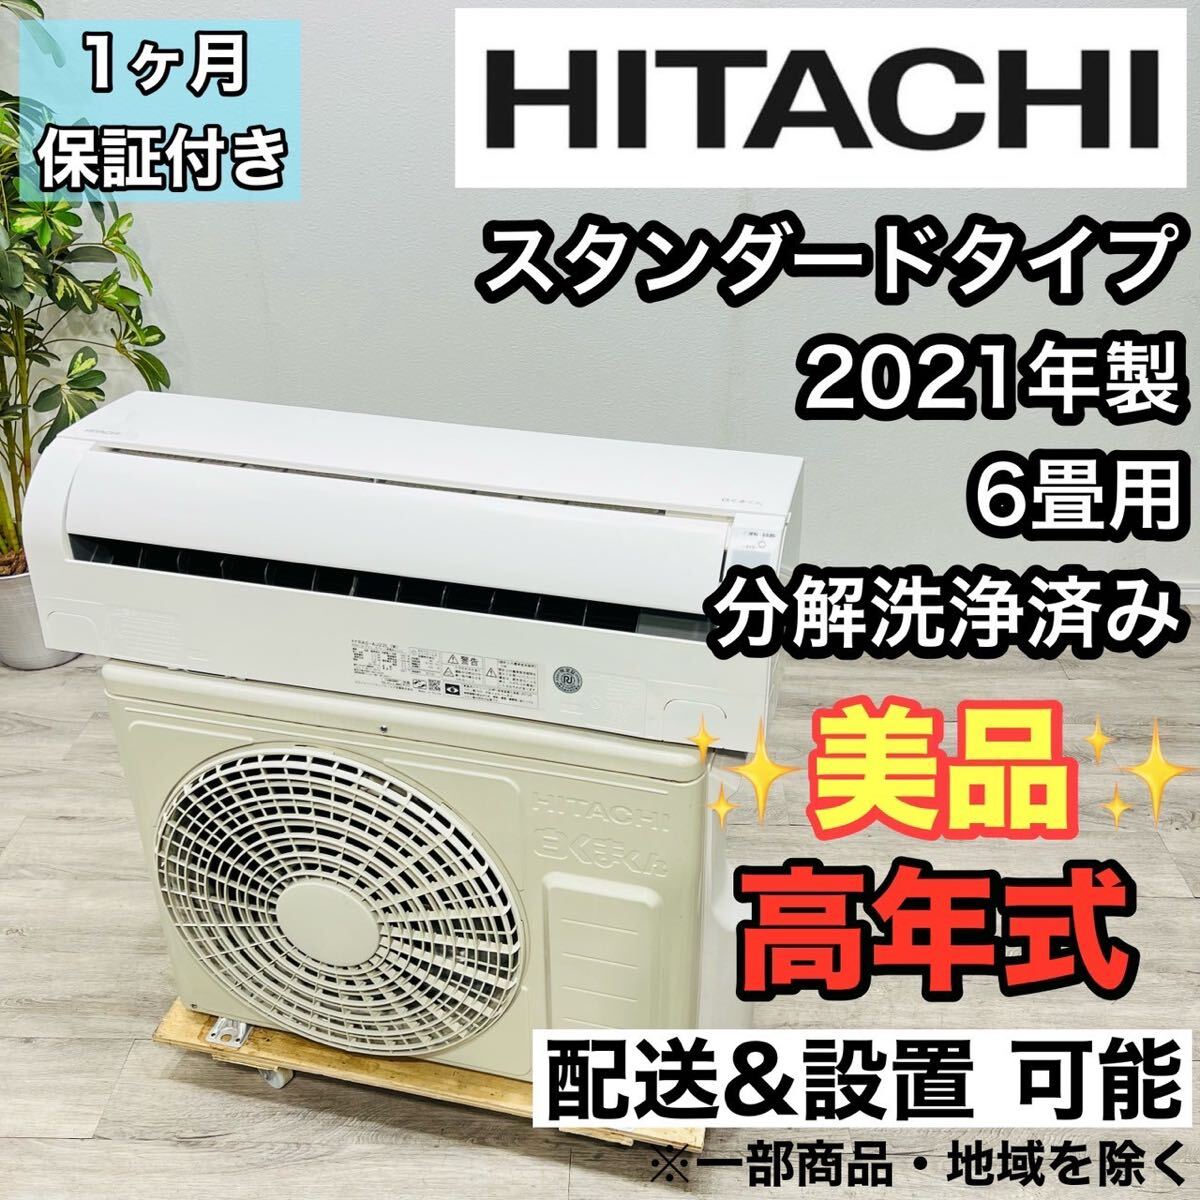 HITACHI a2158 エアコン 6畳用 2021年製 16